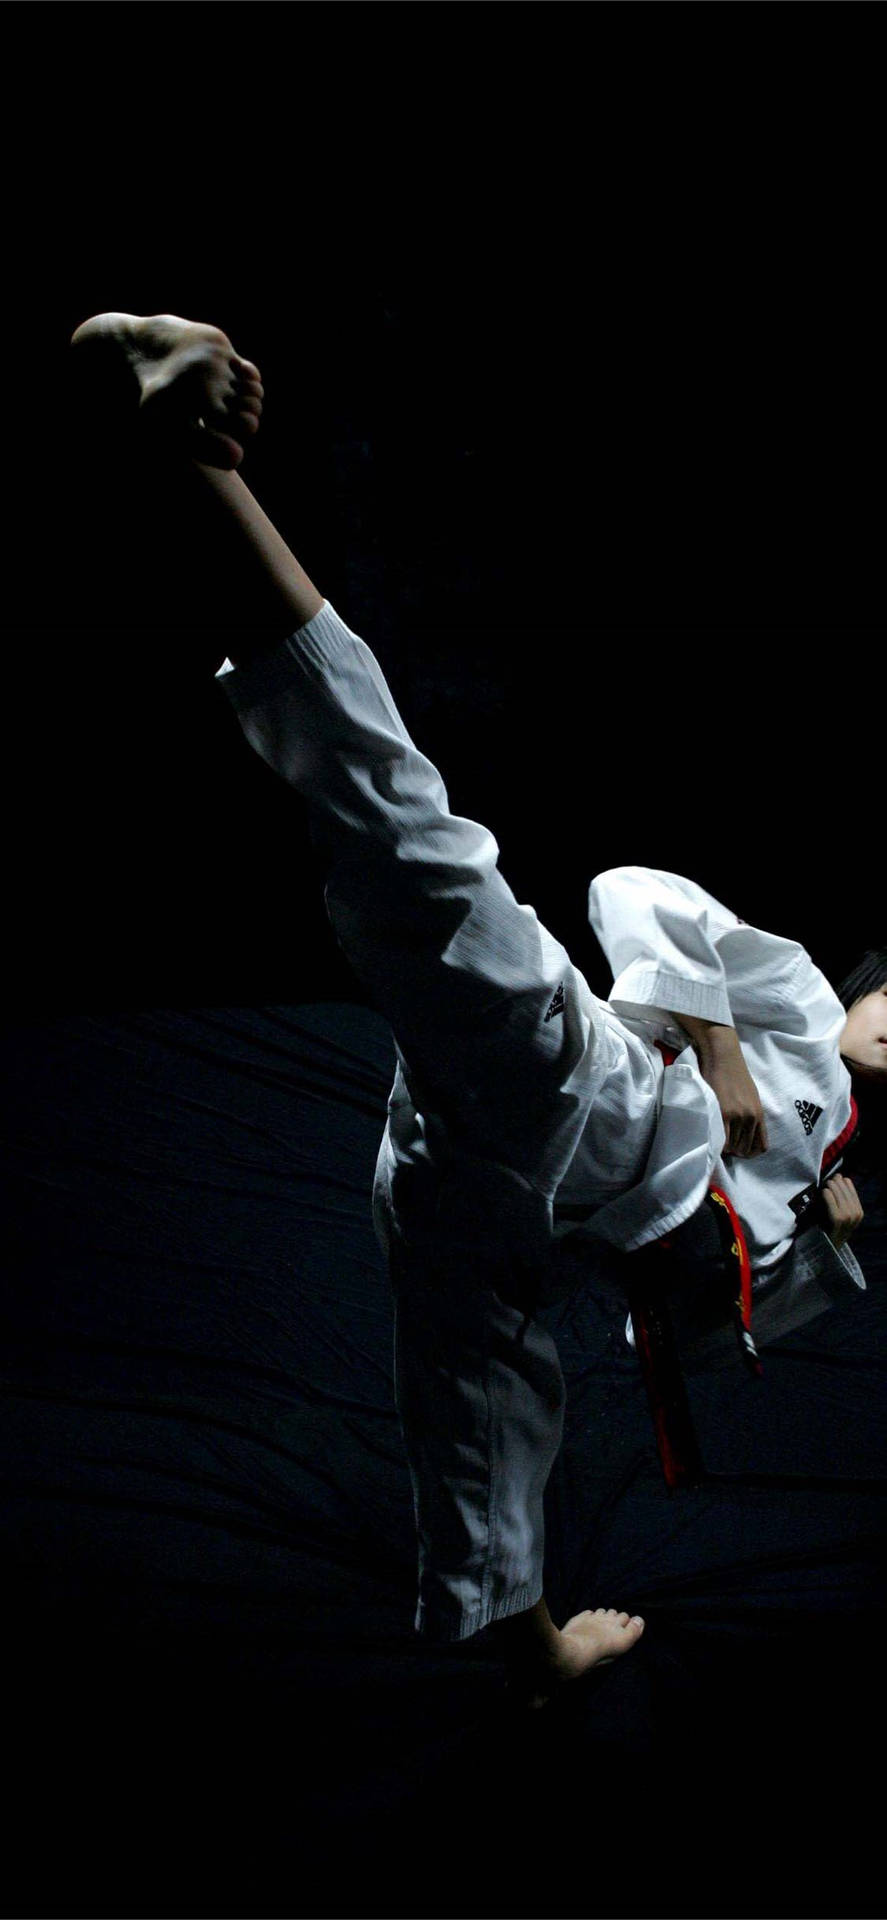 Dunklerminimalistischer Taekwondo-kampfsport Wallpaper